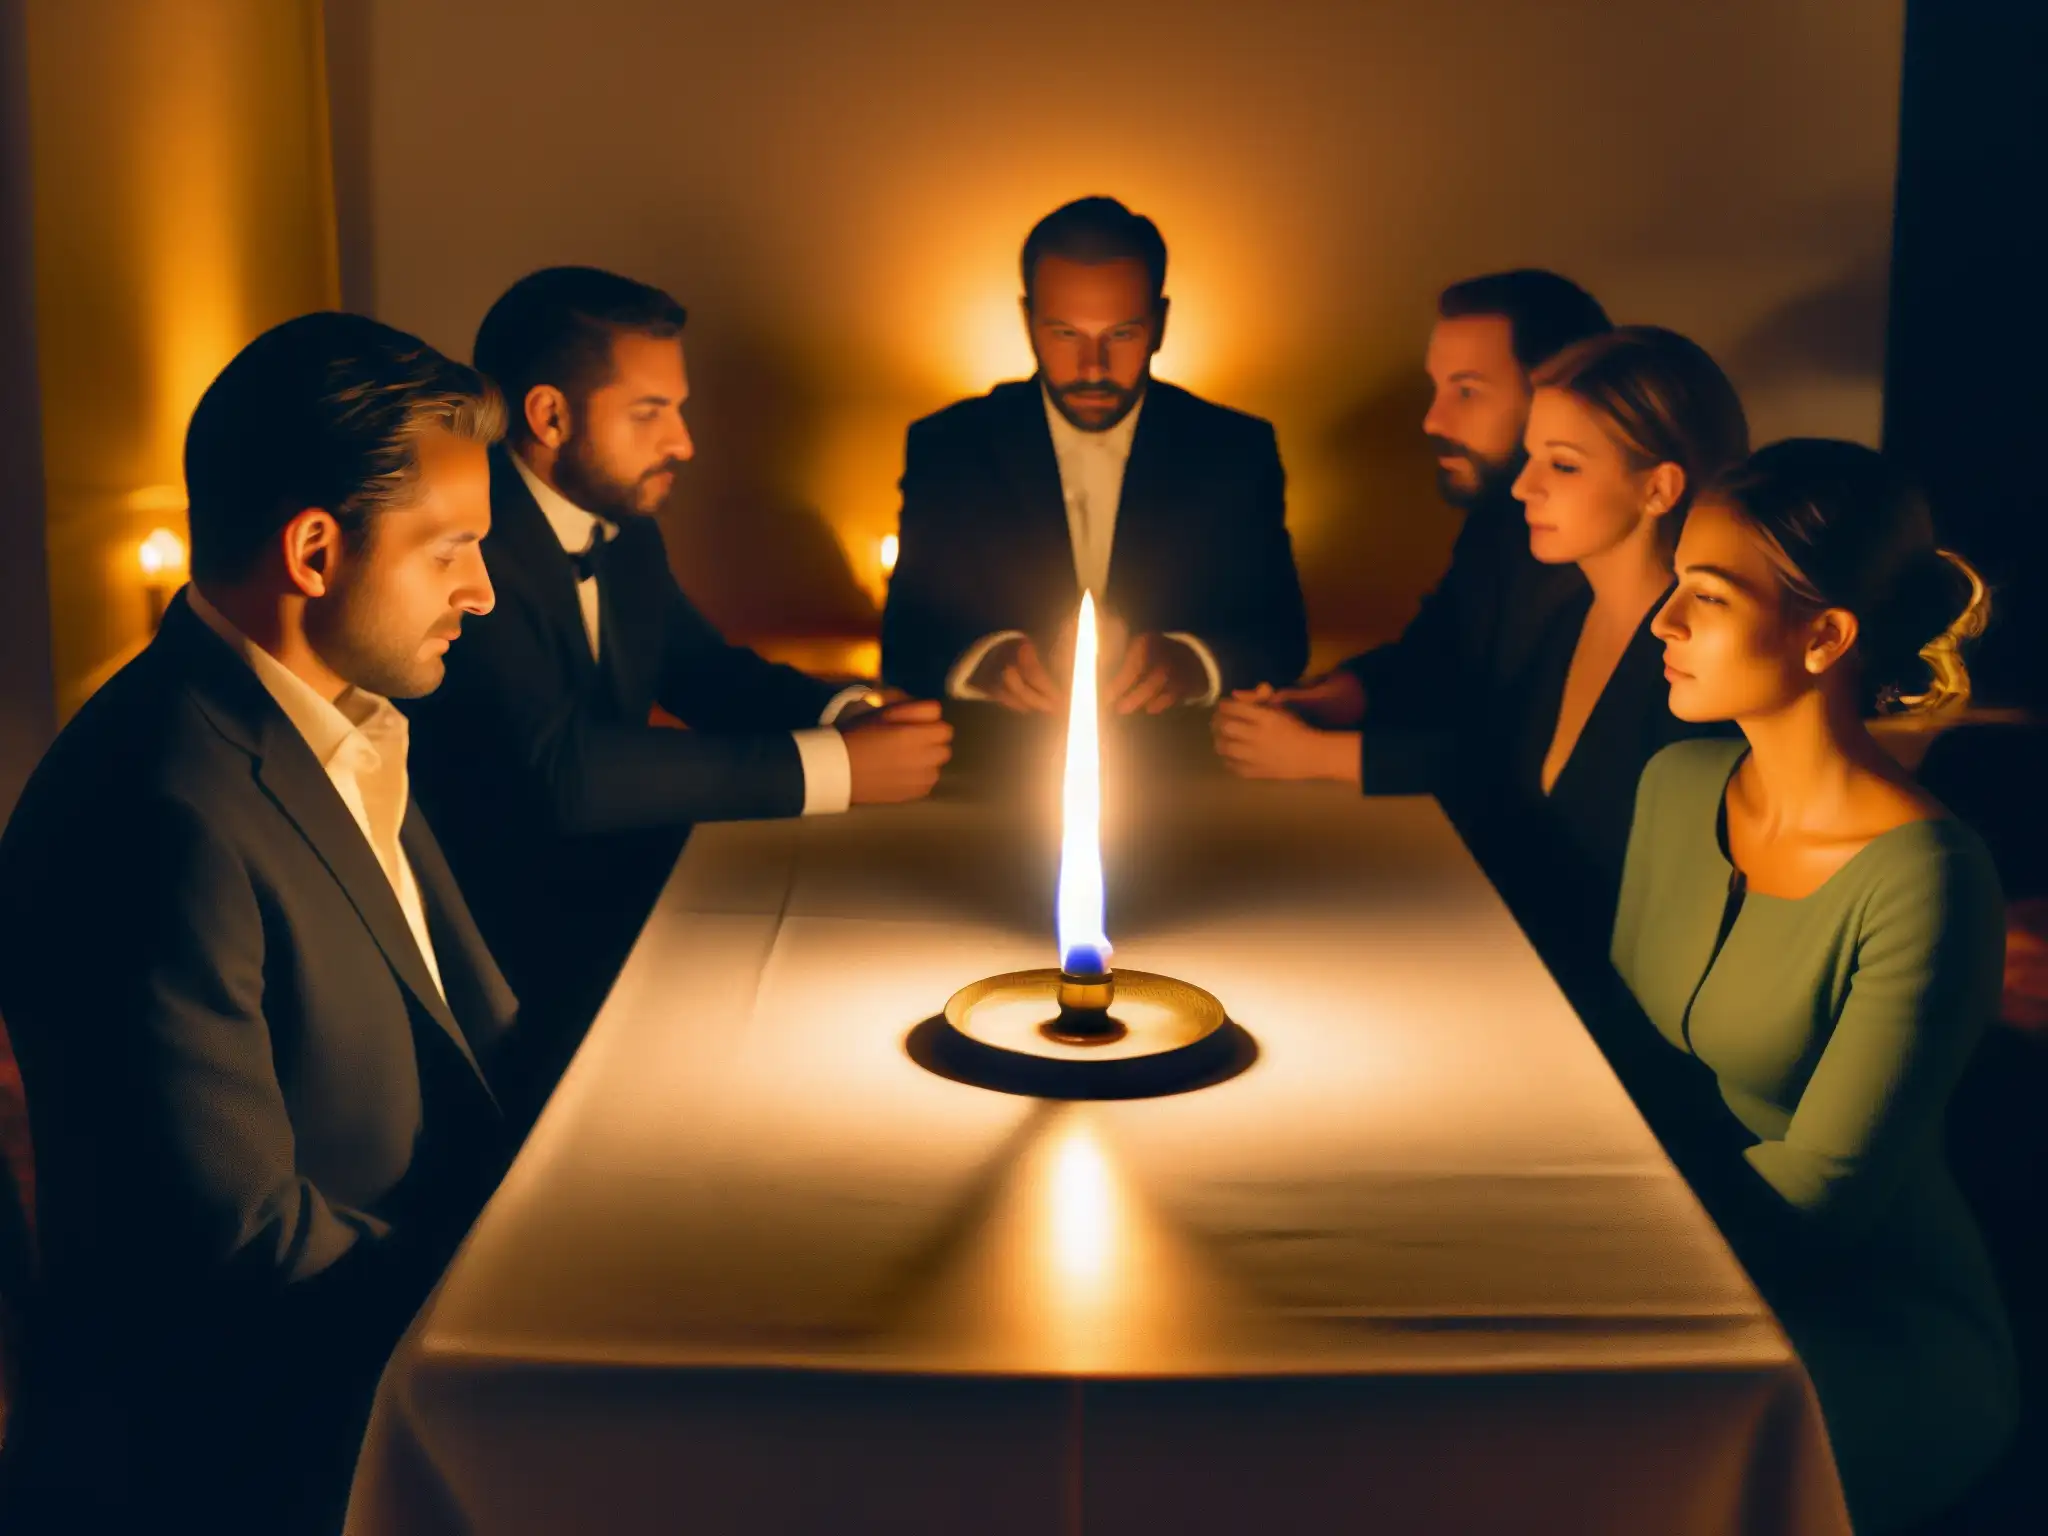 Un grupo en una mesa iluminada por velas participa en una sesión espiritista